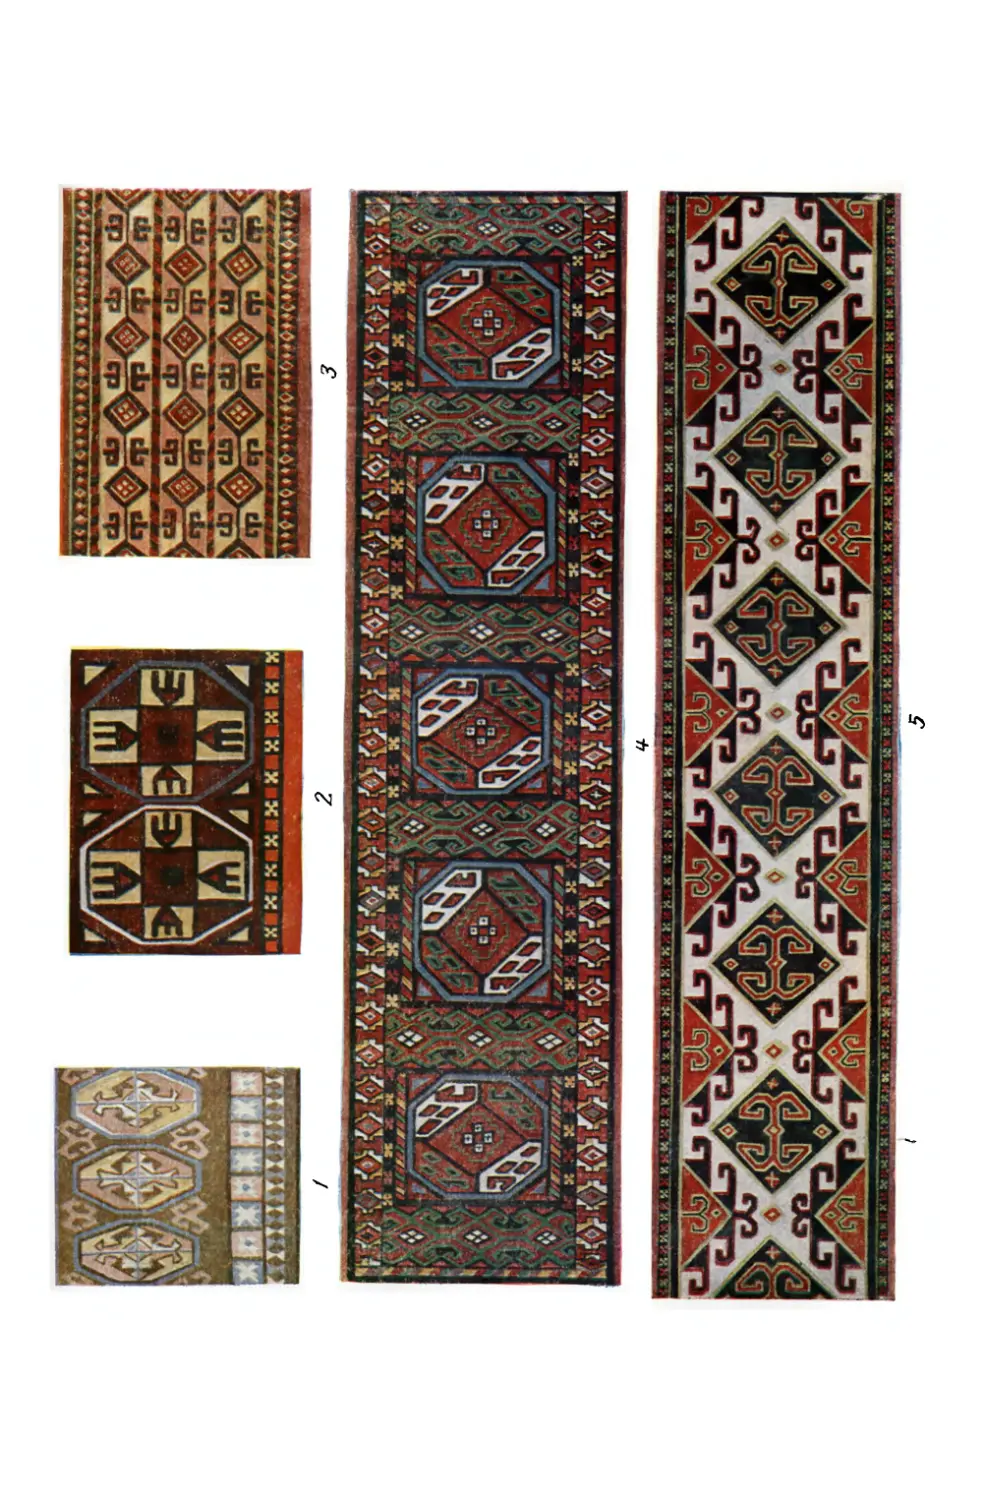 Вклейка. Образцы ковровых изделий каракалпаков